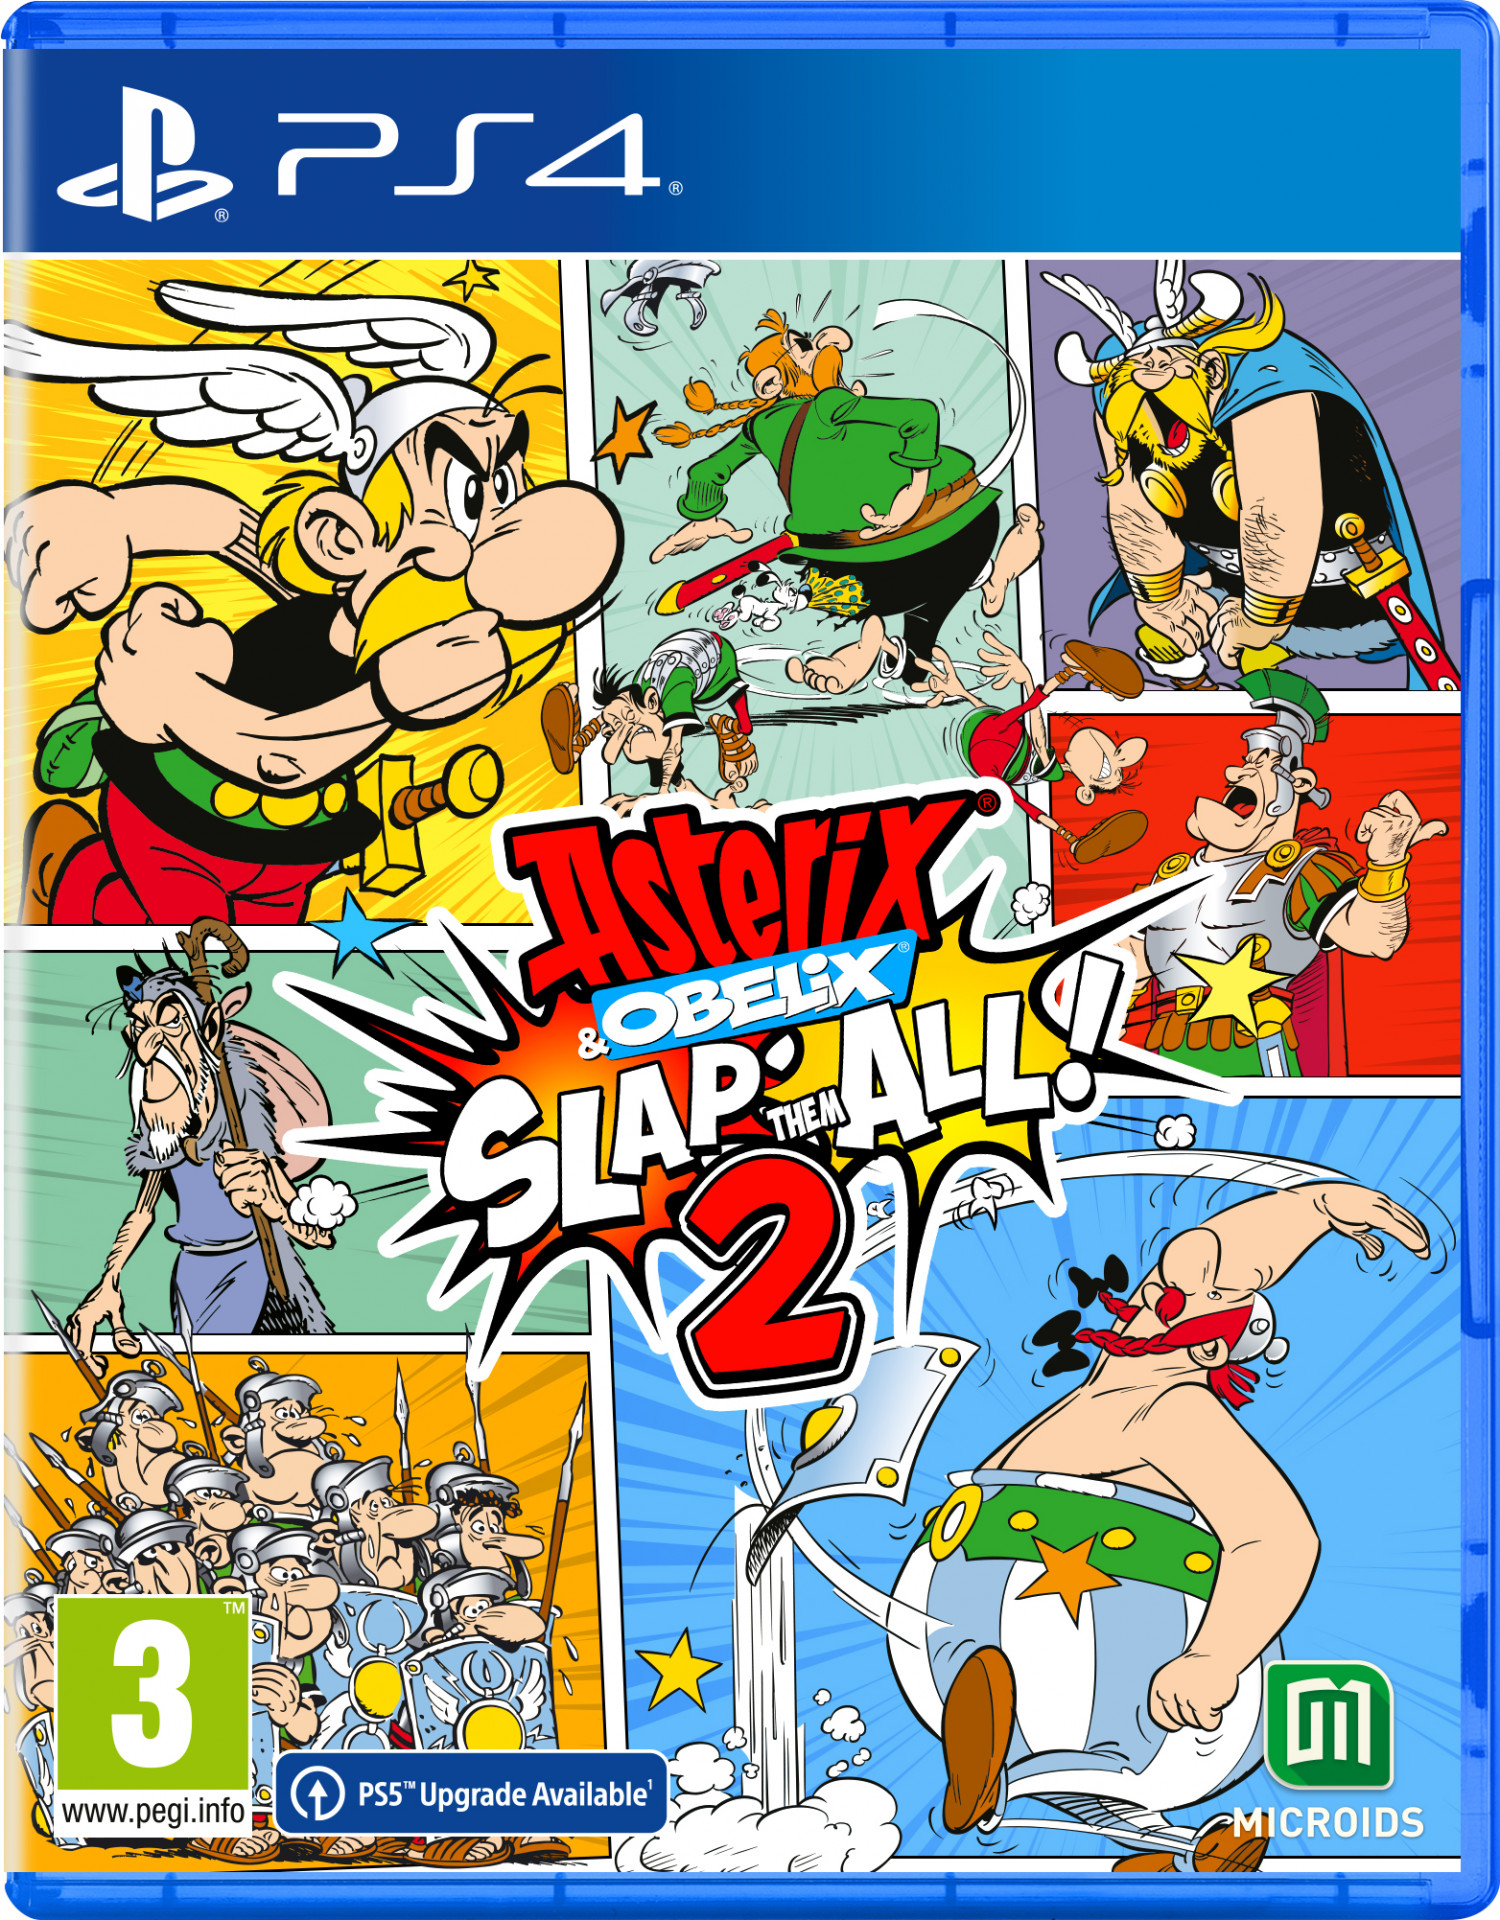 Asterix & Obelix: Slap Them All! 2 (PS4), Microids